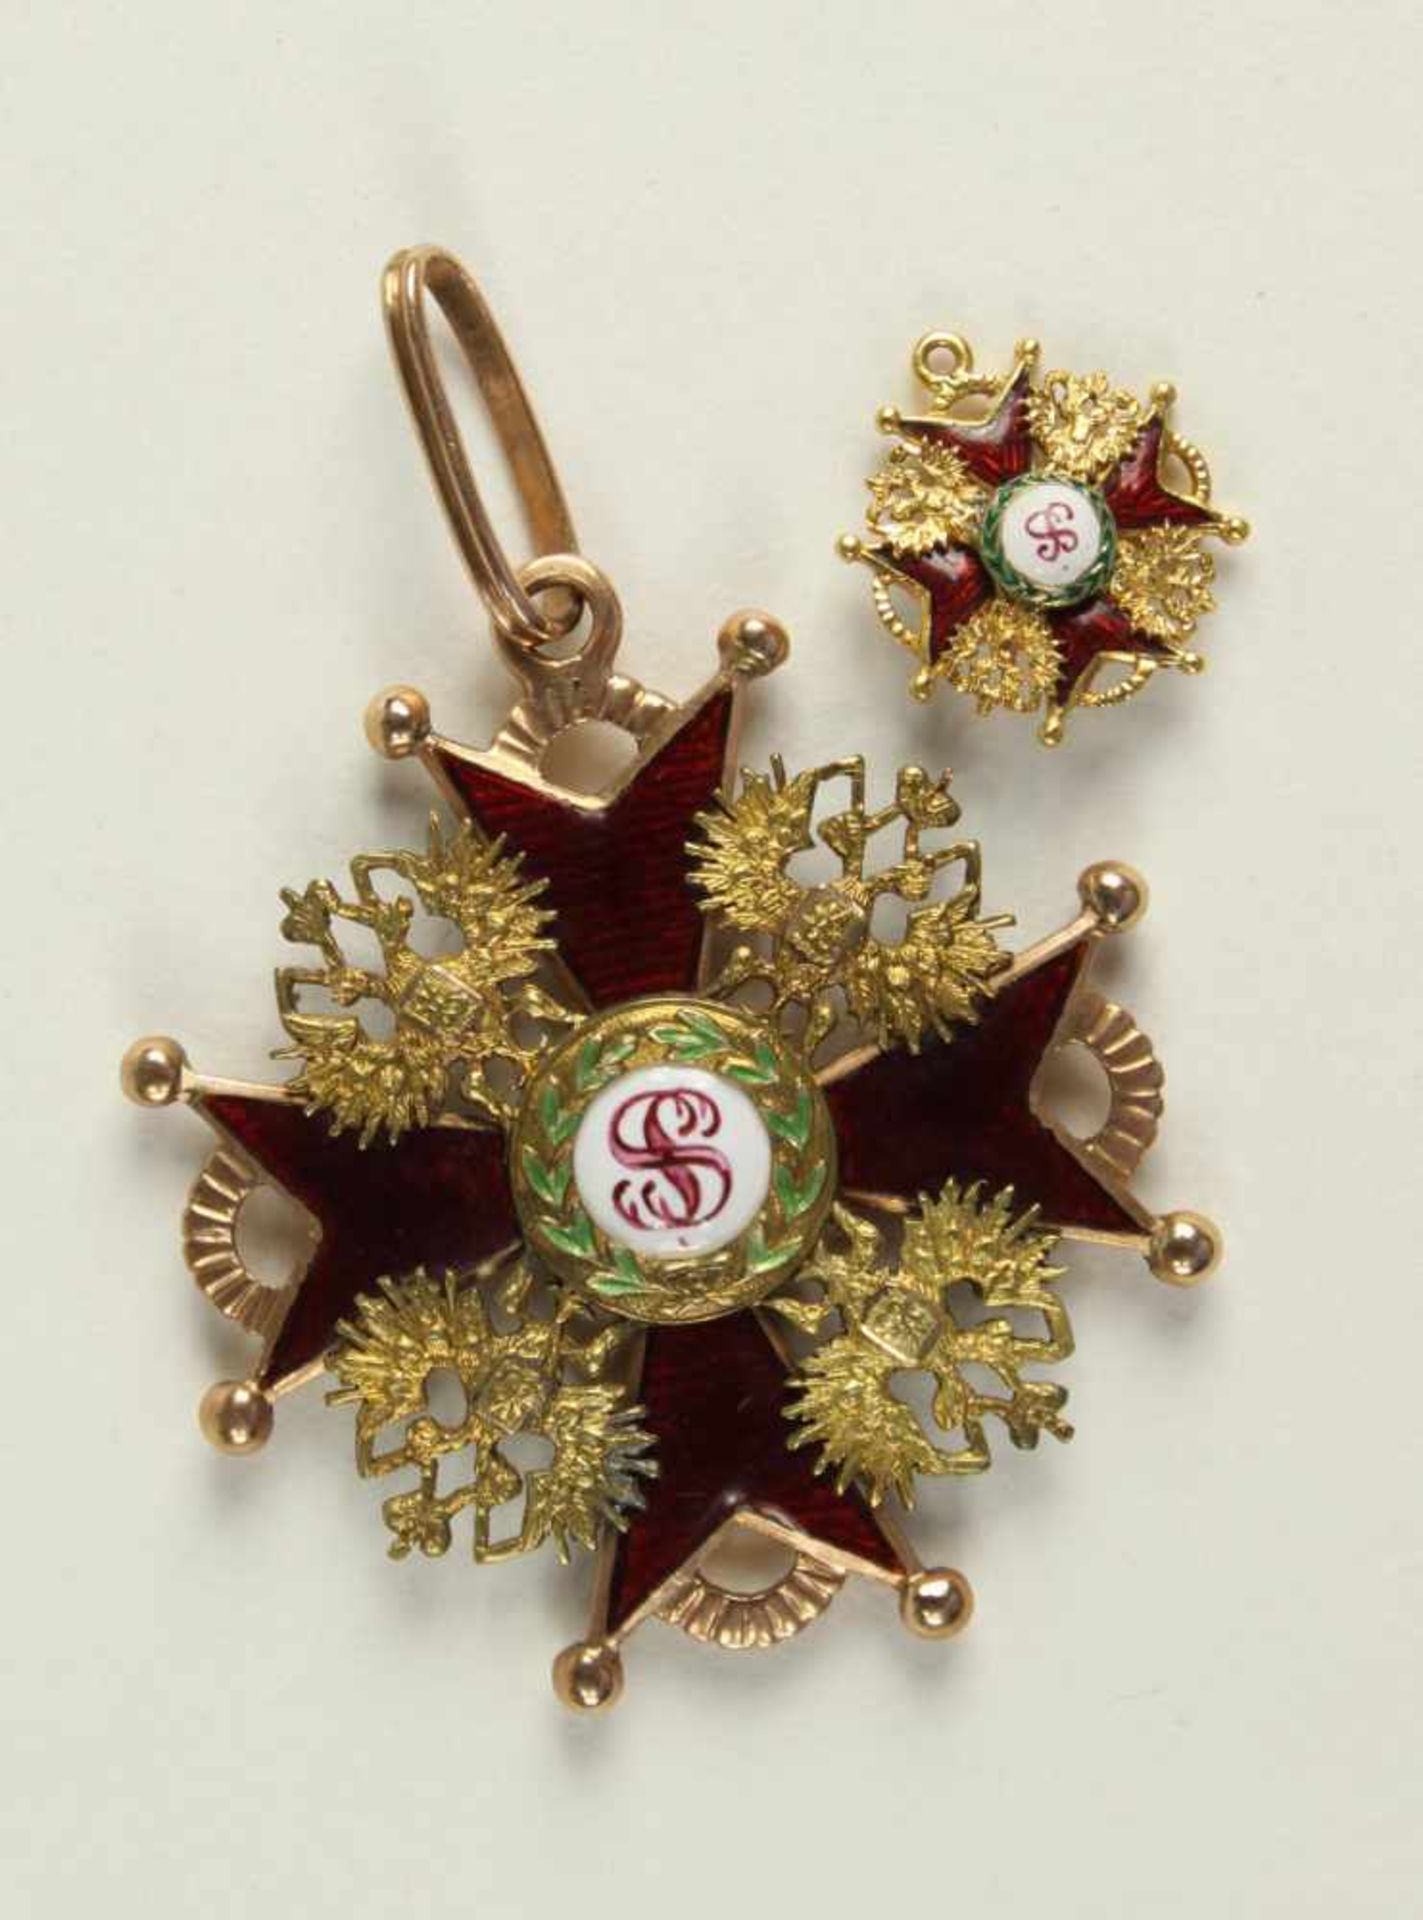 St. Stanislaus-Orden,Kreuz 3. Klasse. Kreuz Gold emailliert, 40mm, das Medaillon gemalt, die Bandöse